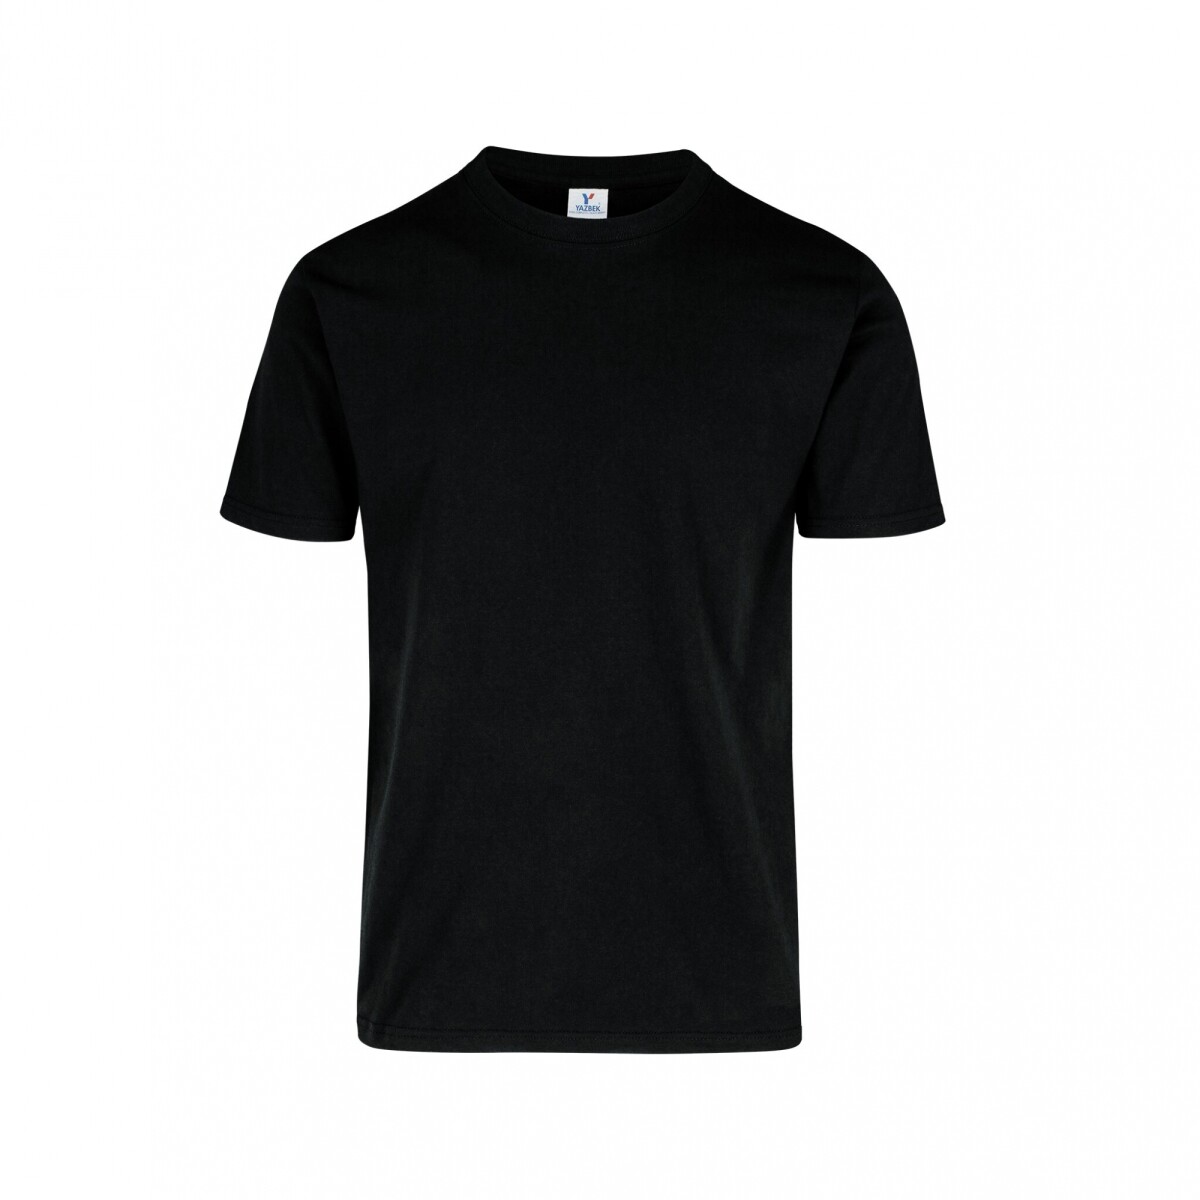 Camiseta a la base peso completo - Negro 